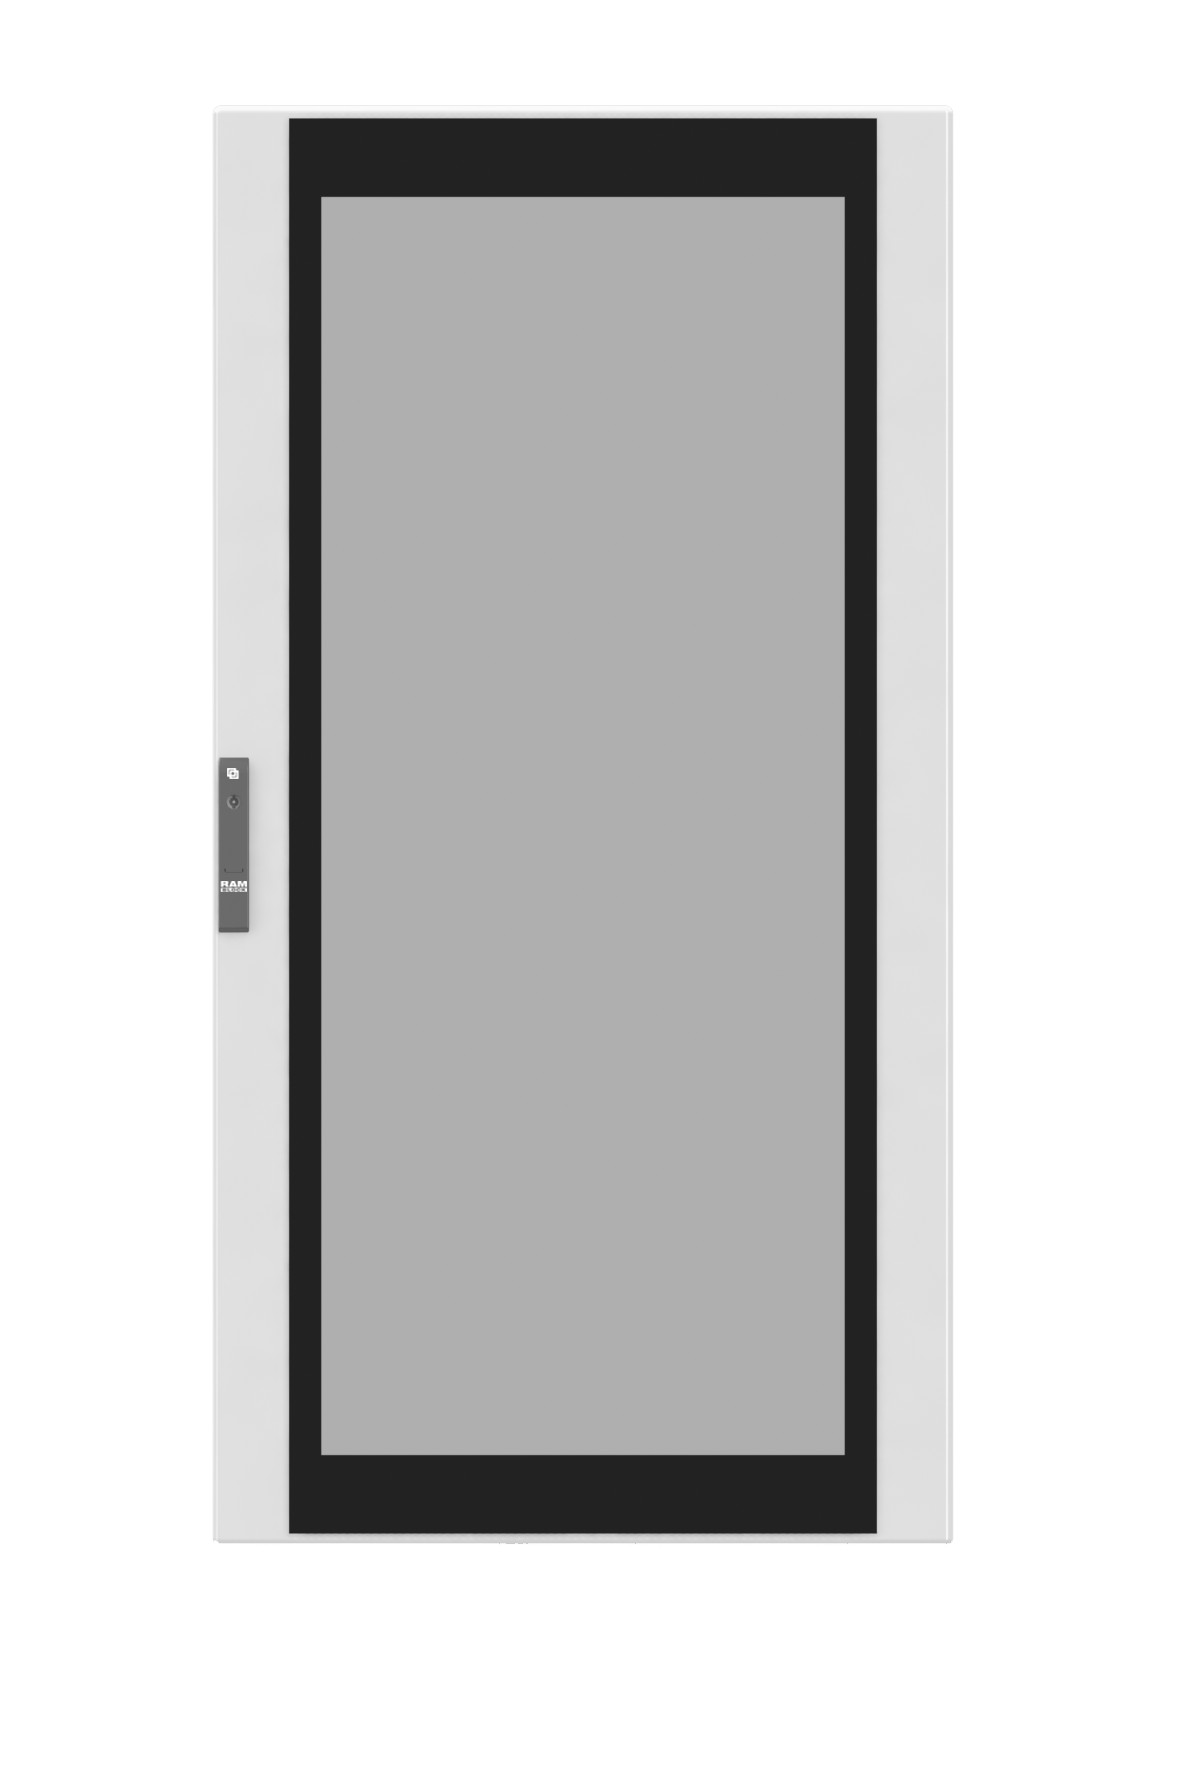 Дверь сплошная для шкафов dae cqe 1400 x 600 мм